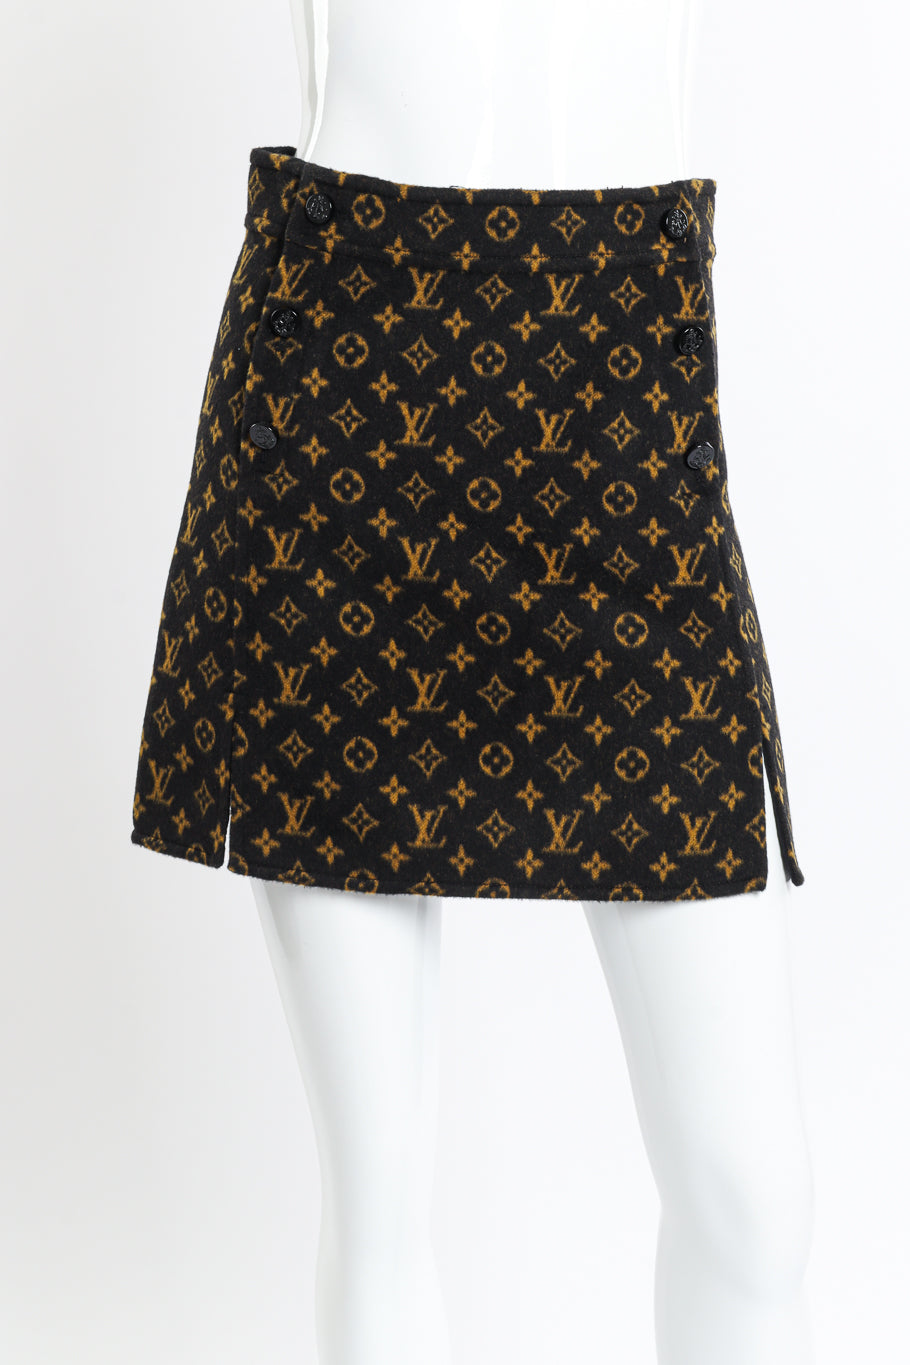 Louis Vuitton Monogram Slit Skirt front on mannequin closeup @recess la